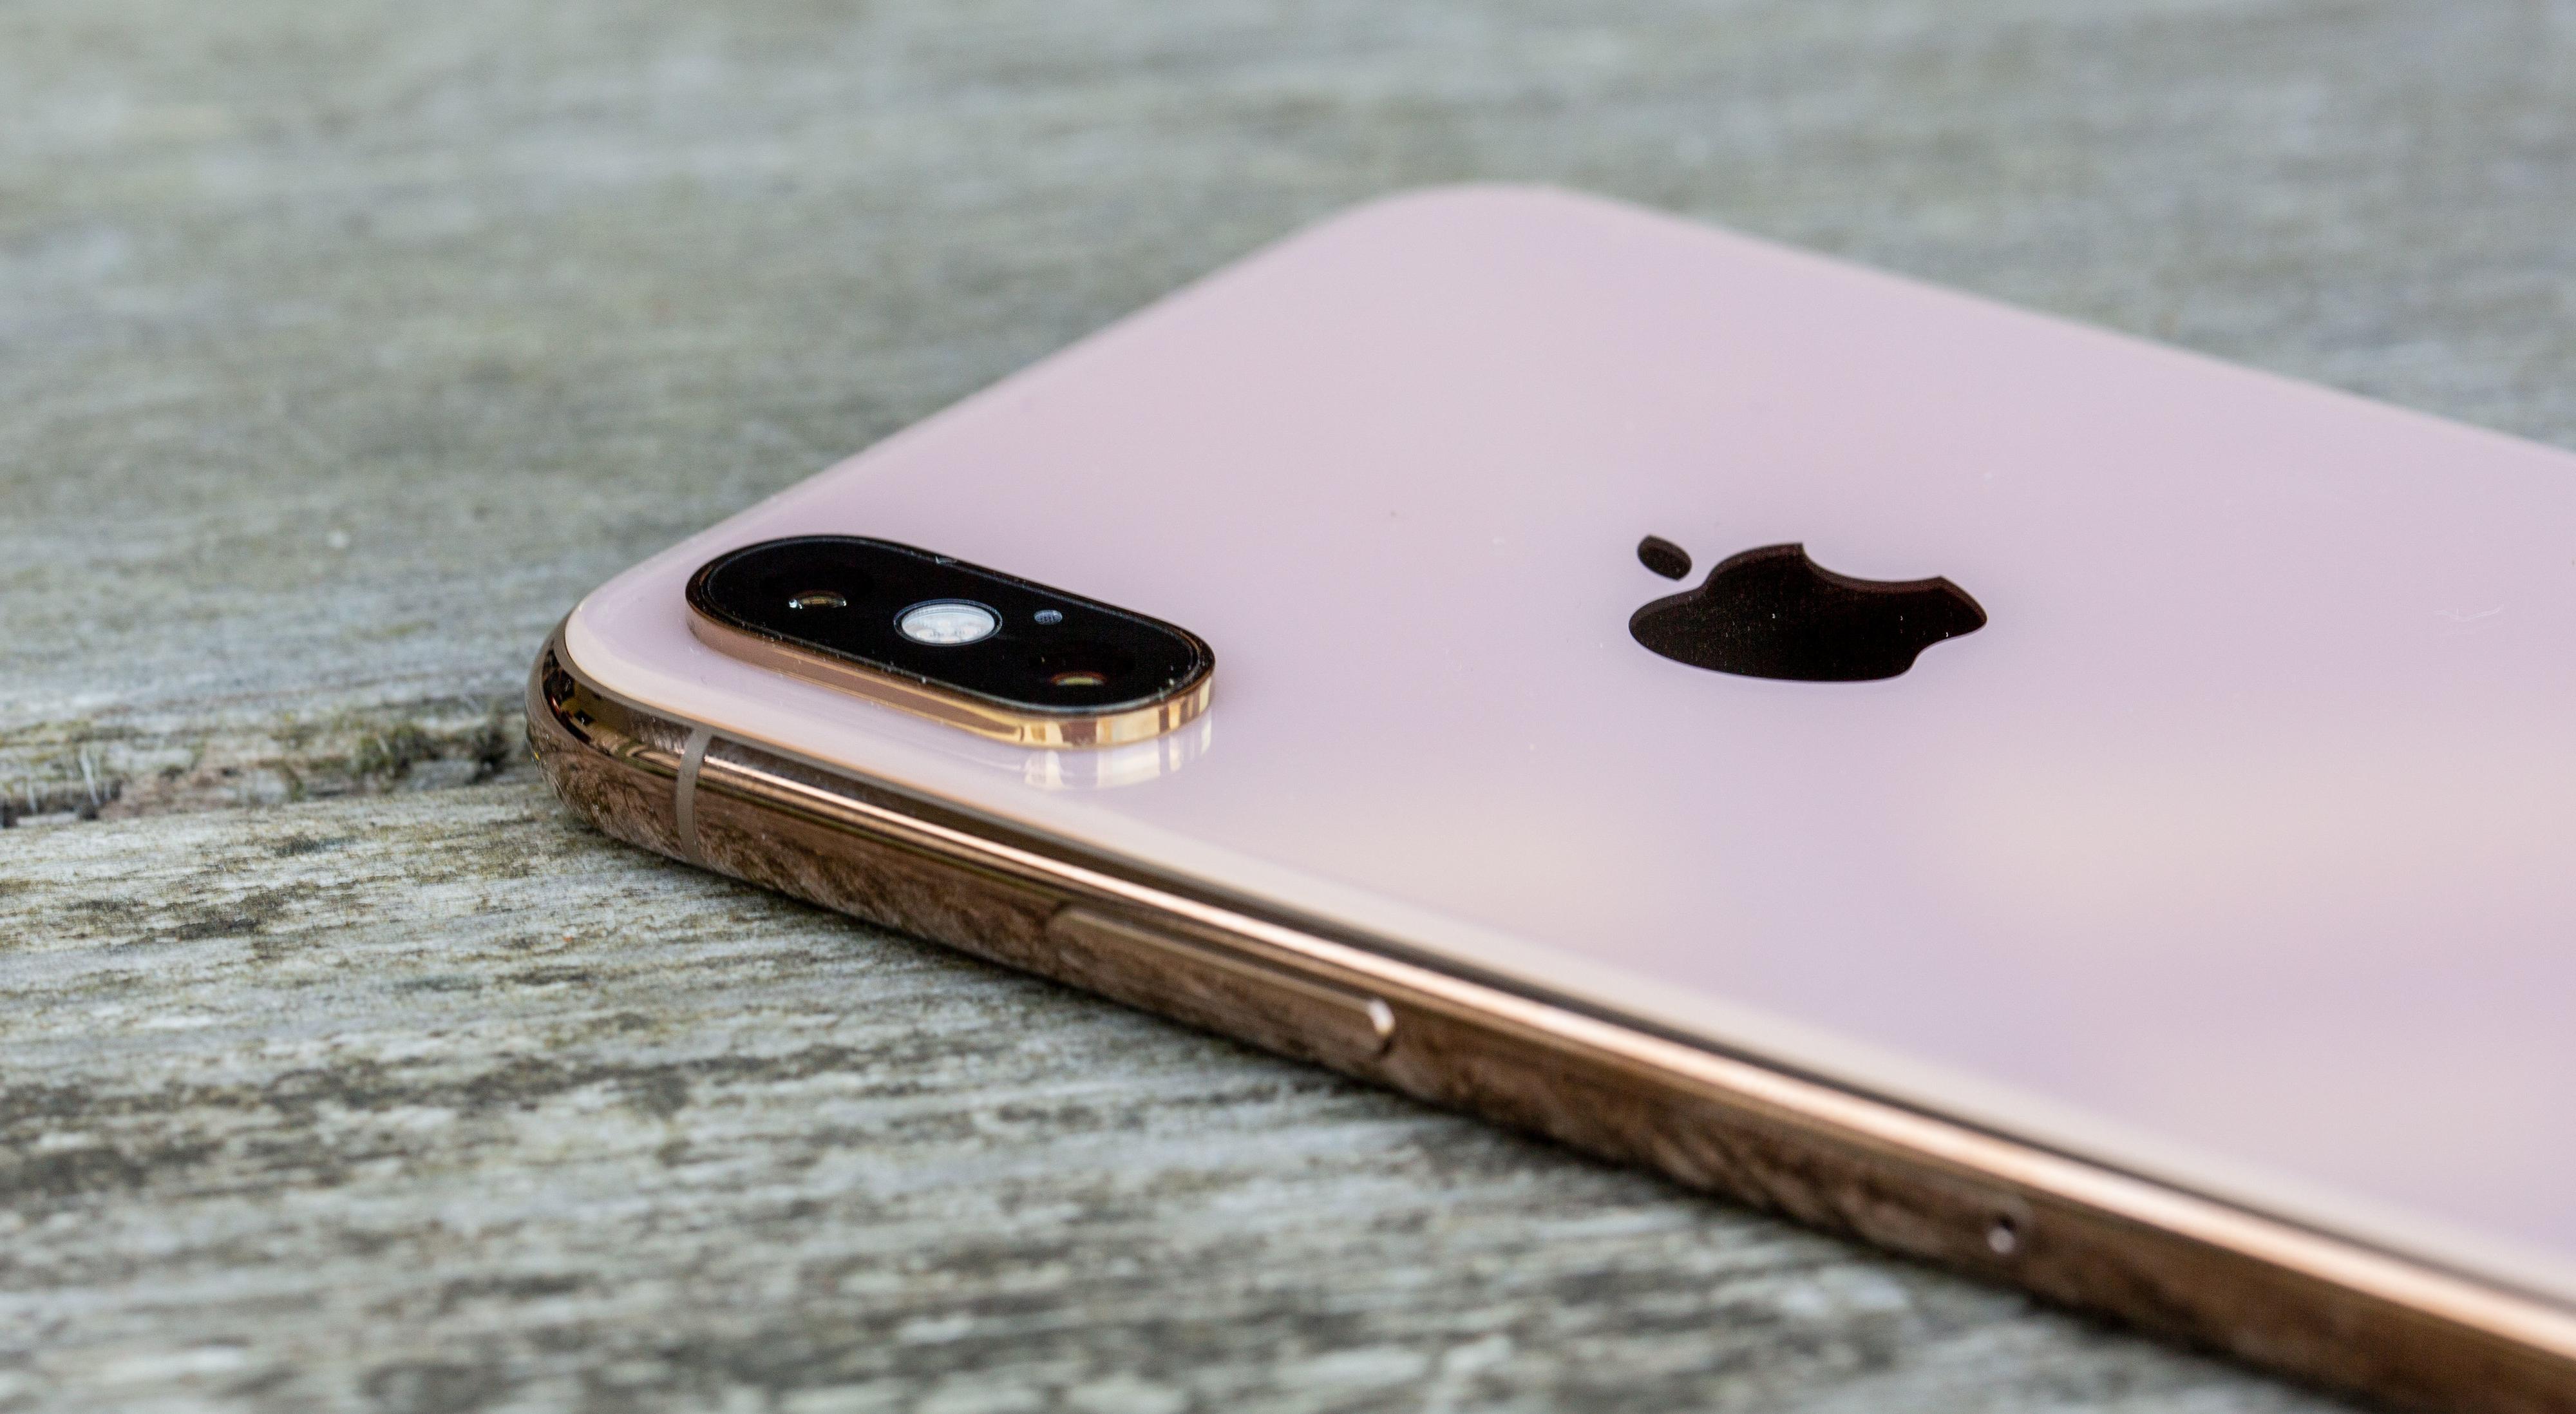 Baksiden av iPhone Xs i gull skifter litt farge basert på hvordan lyset treffer den. Stort sett ser det imidlertid ut som en kremet hvitfarge, mens rammen alltid er skinnende gullaktig.